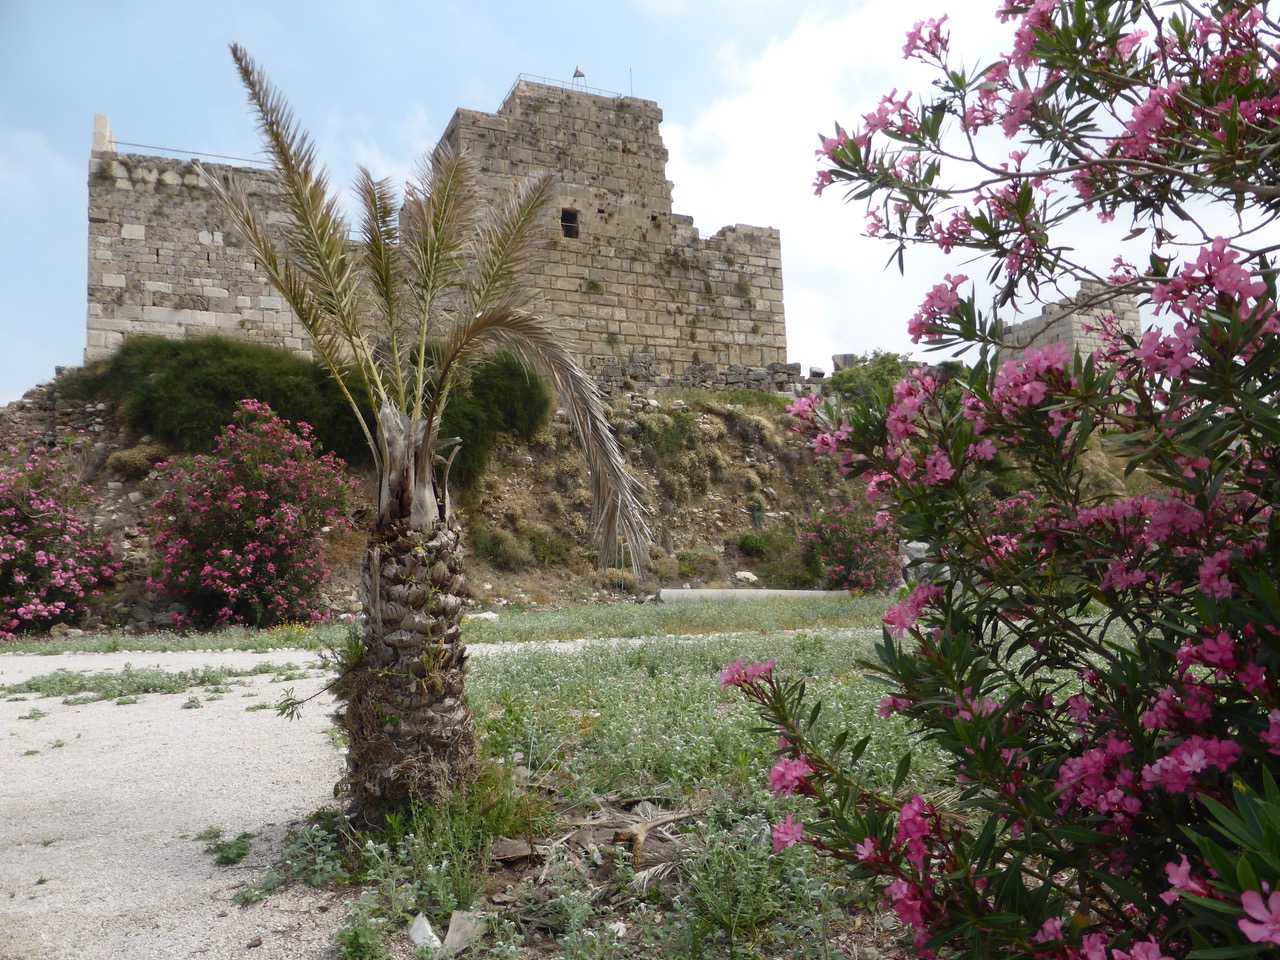 Byblos - Crusader Castle, Beirut